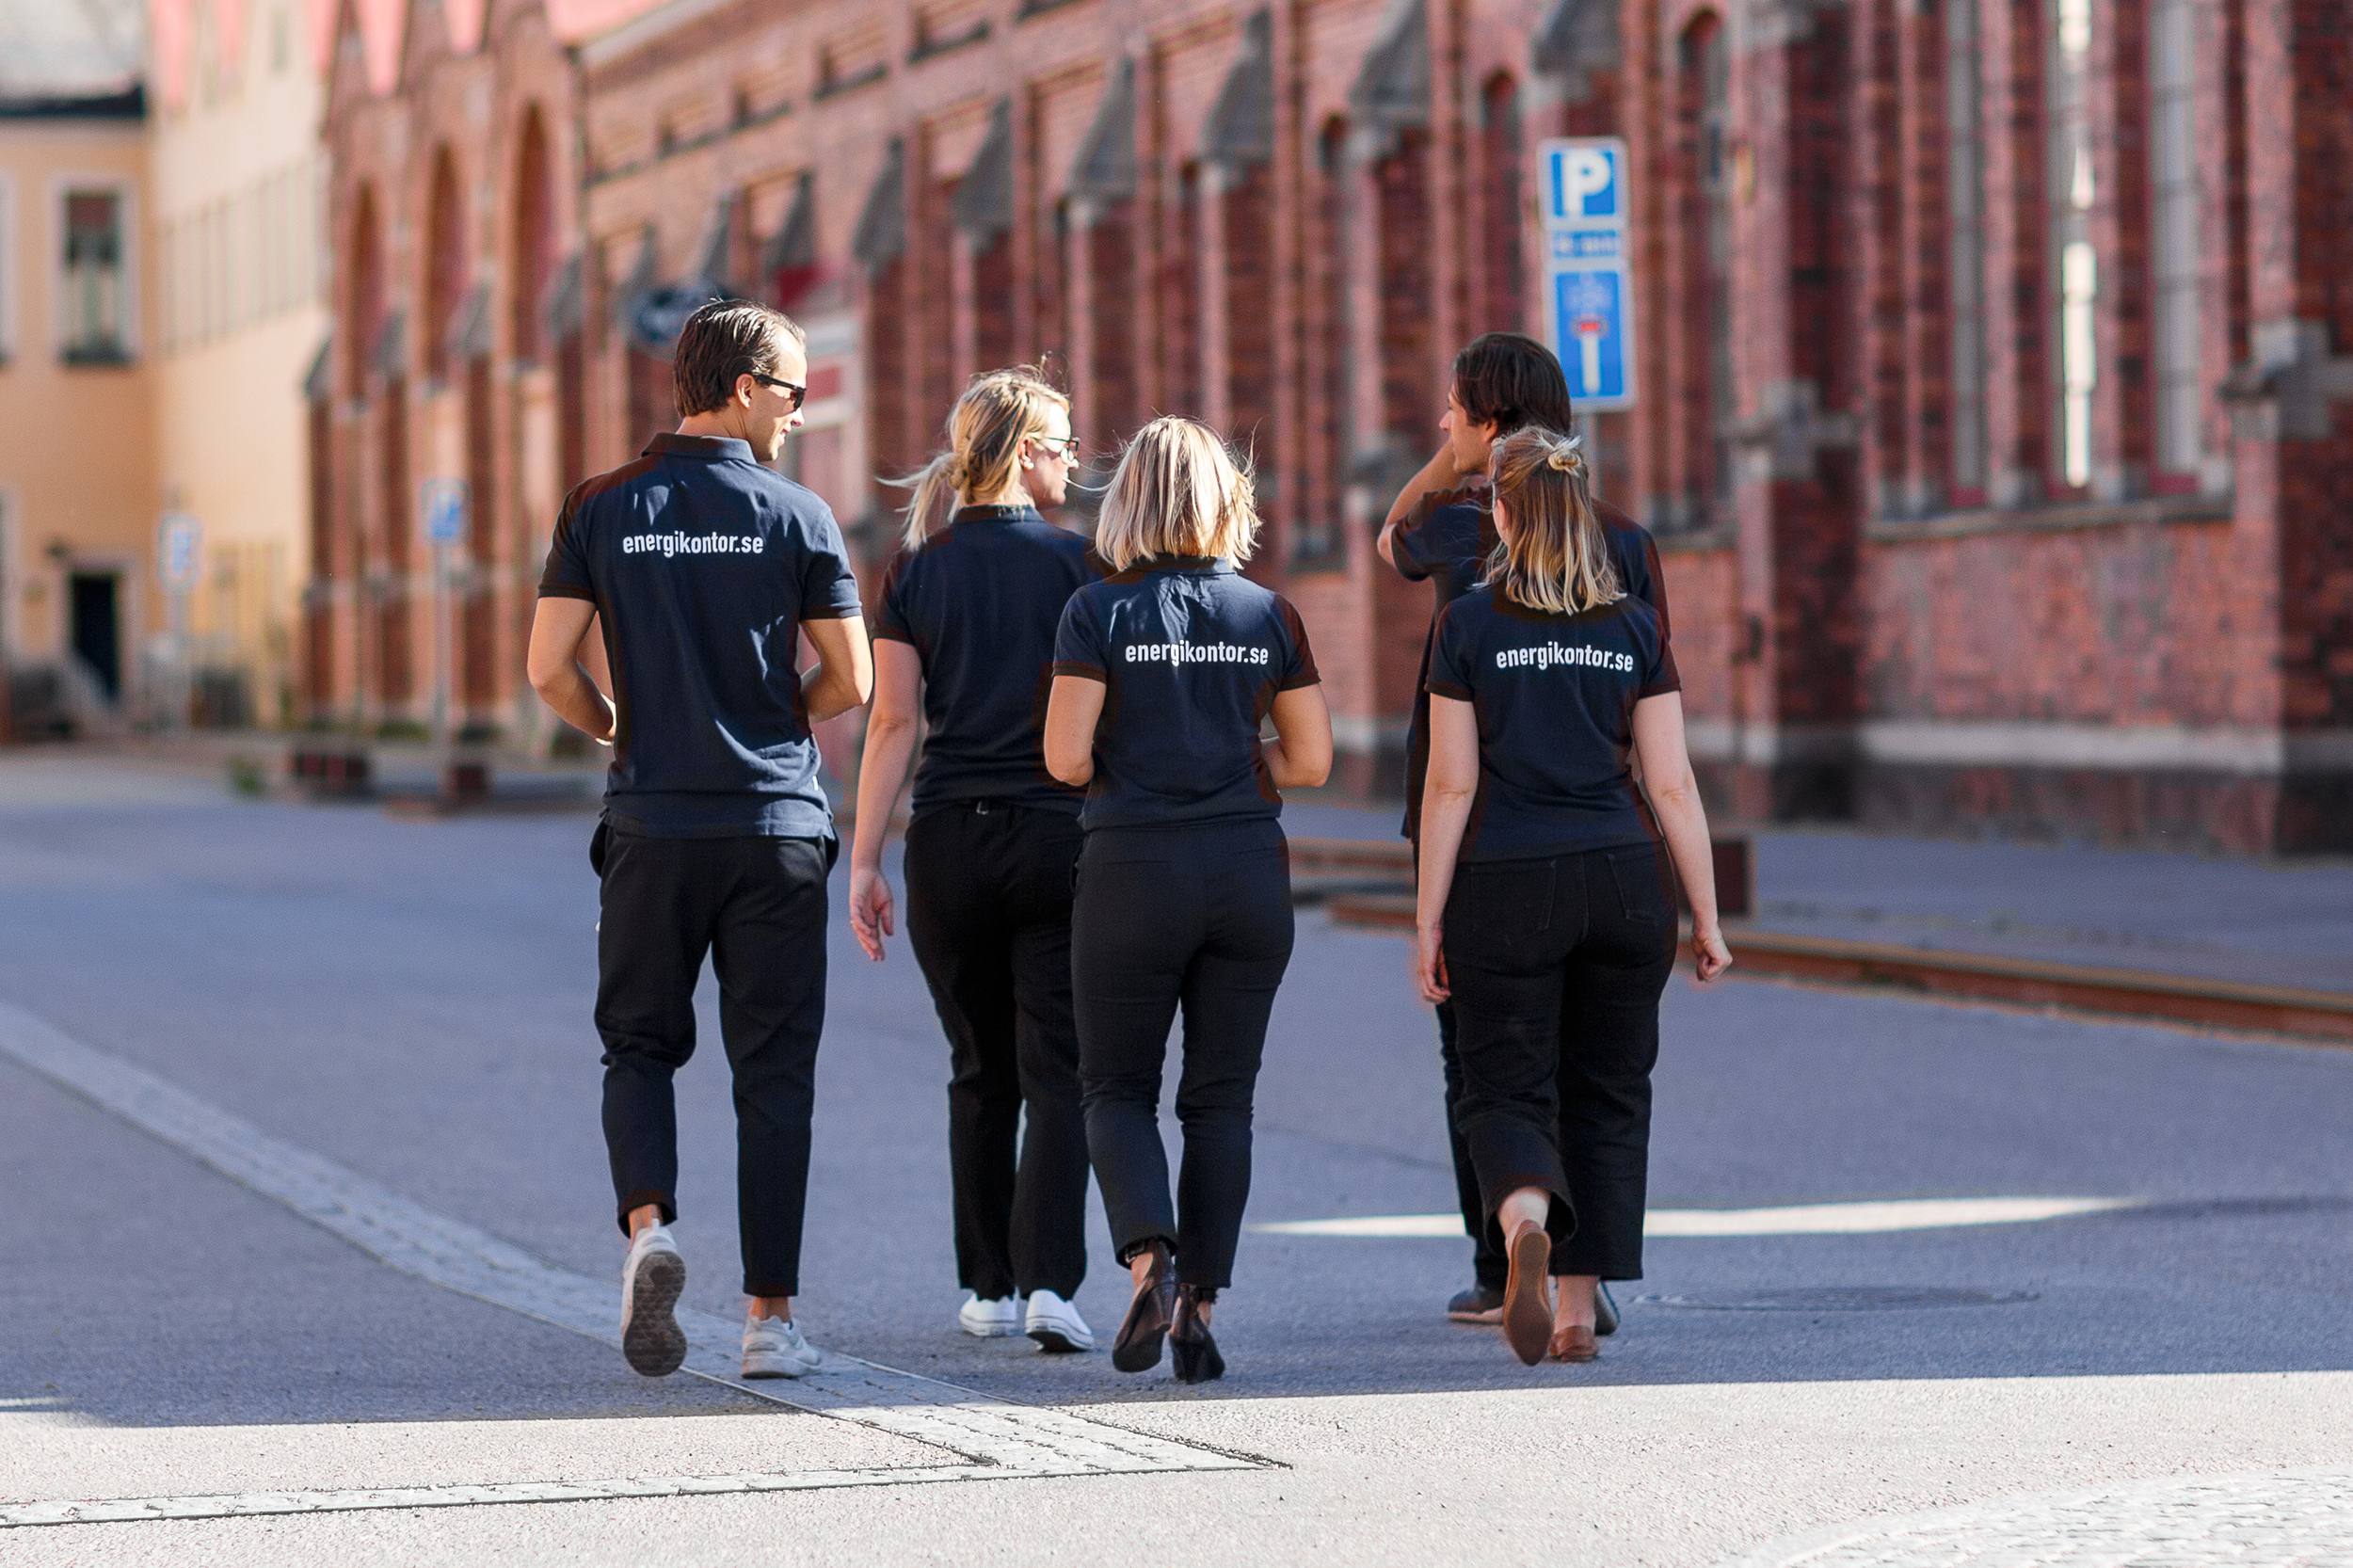 Fem kollegor från Energikontoret i Mälardalen promenerar och diskuterar energifrågor i Munktellstaden i Eskilstuna.